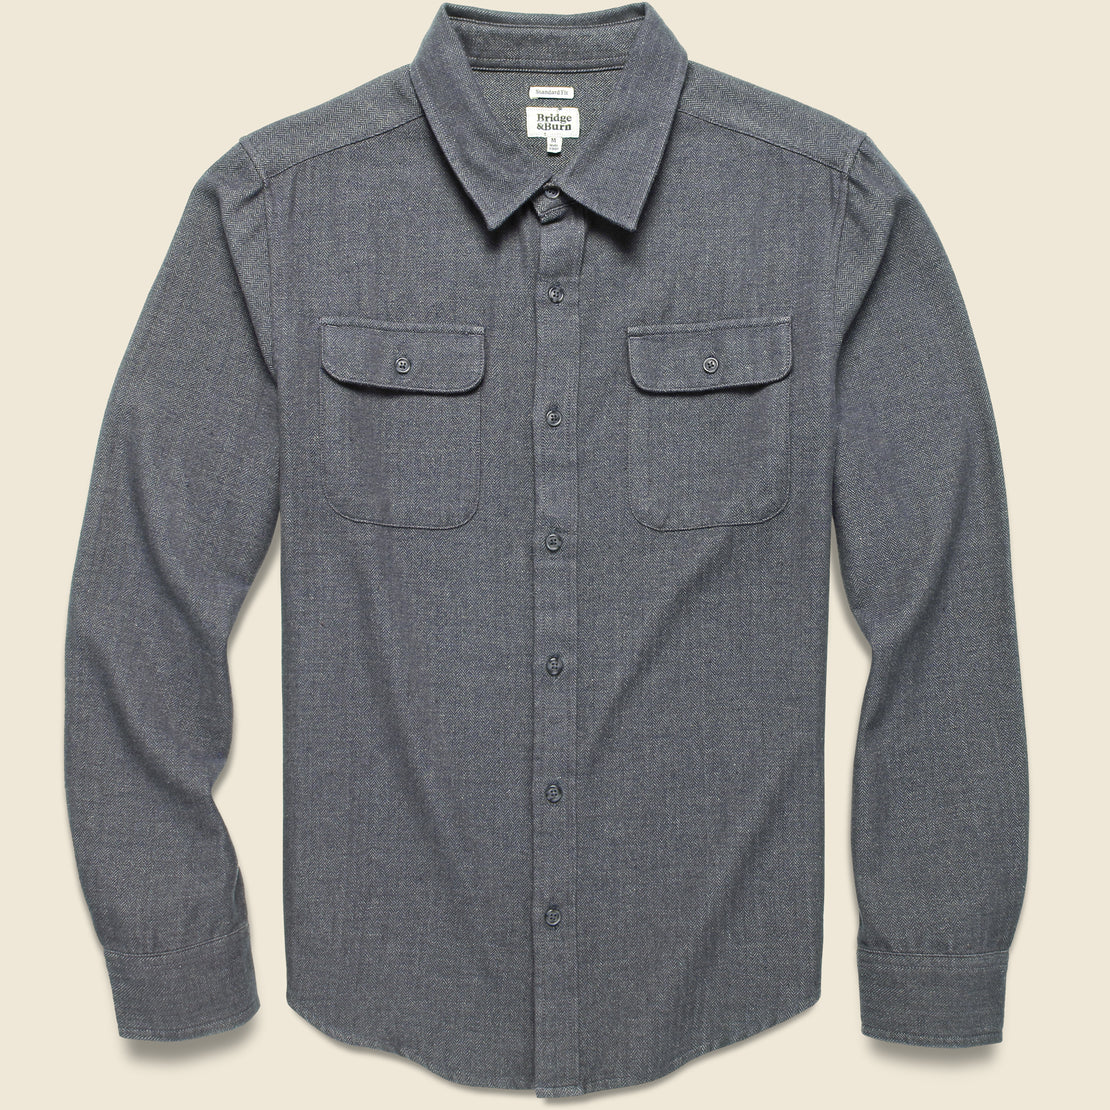 Bedford Shirt - Charcoal Herringbone